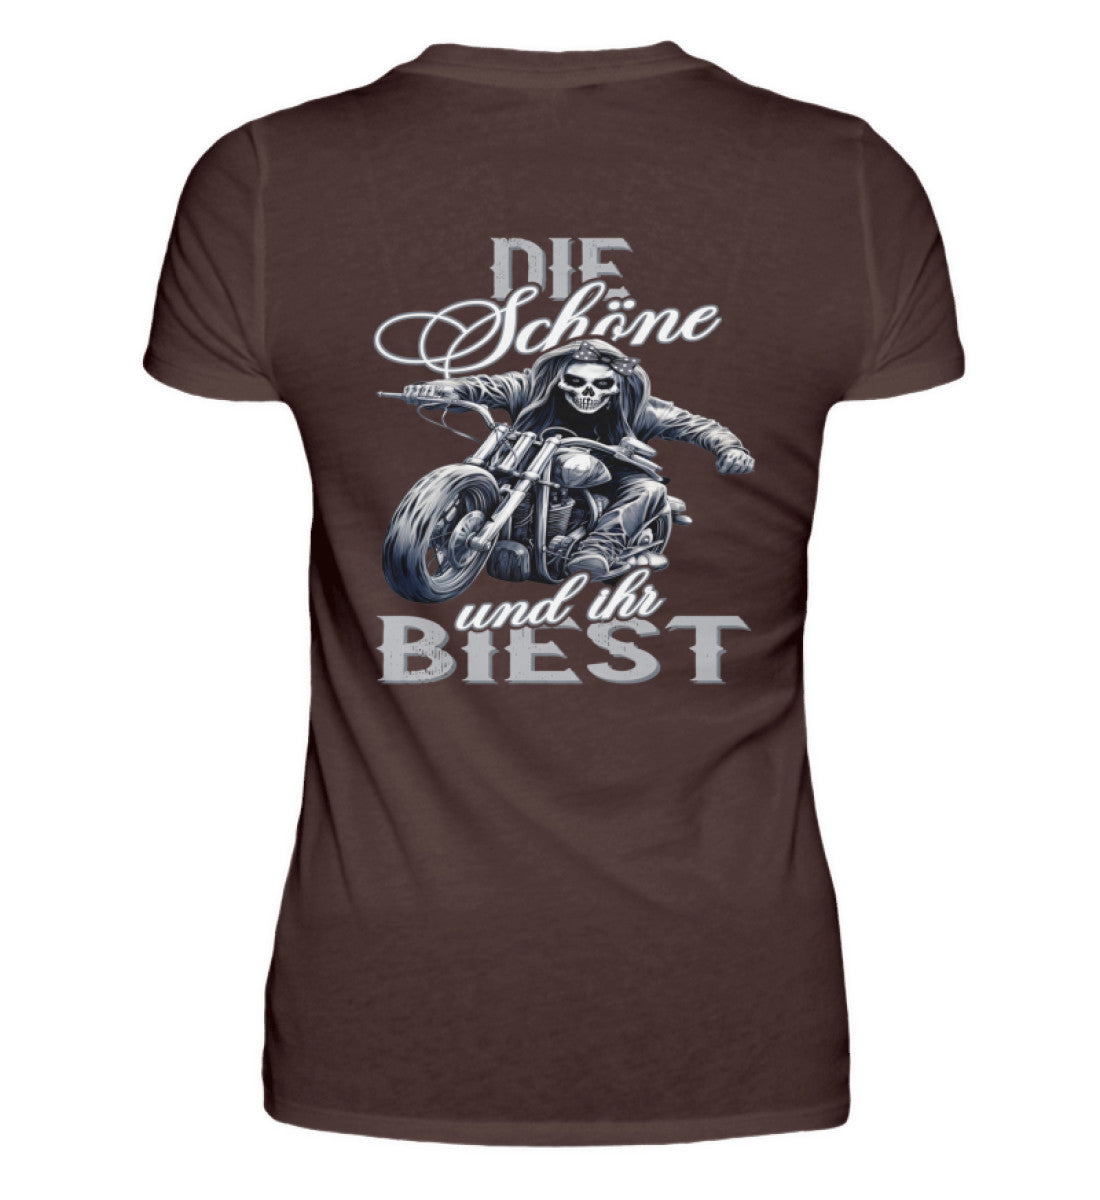 Ein Bikerin T-Shirt für Motorradfahrerinnen von Wingbikers mit dem Aufdruck, Die Schöne und ihr Biest - mit Back Print, in braun.